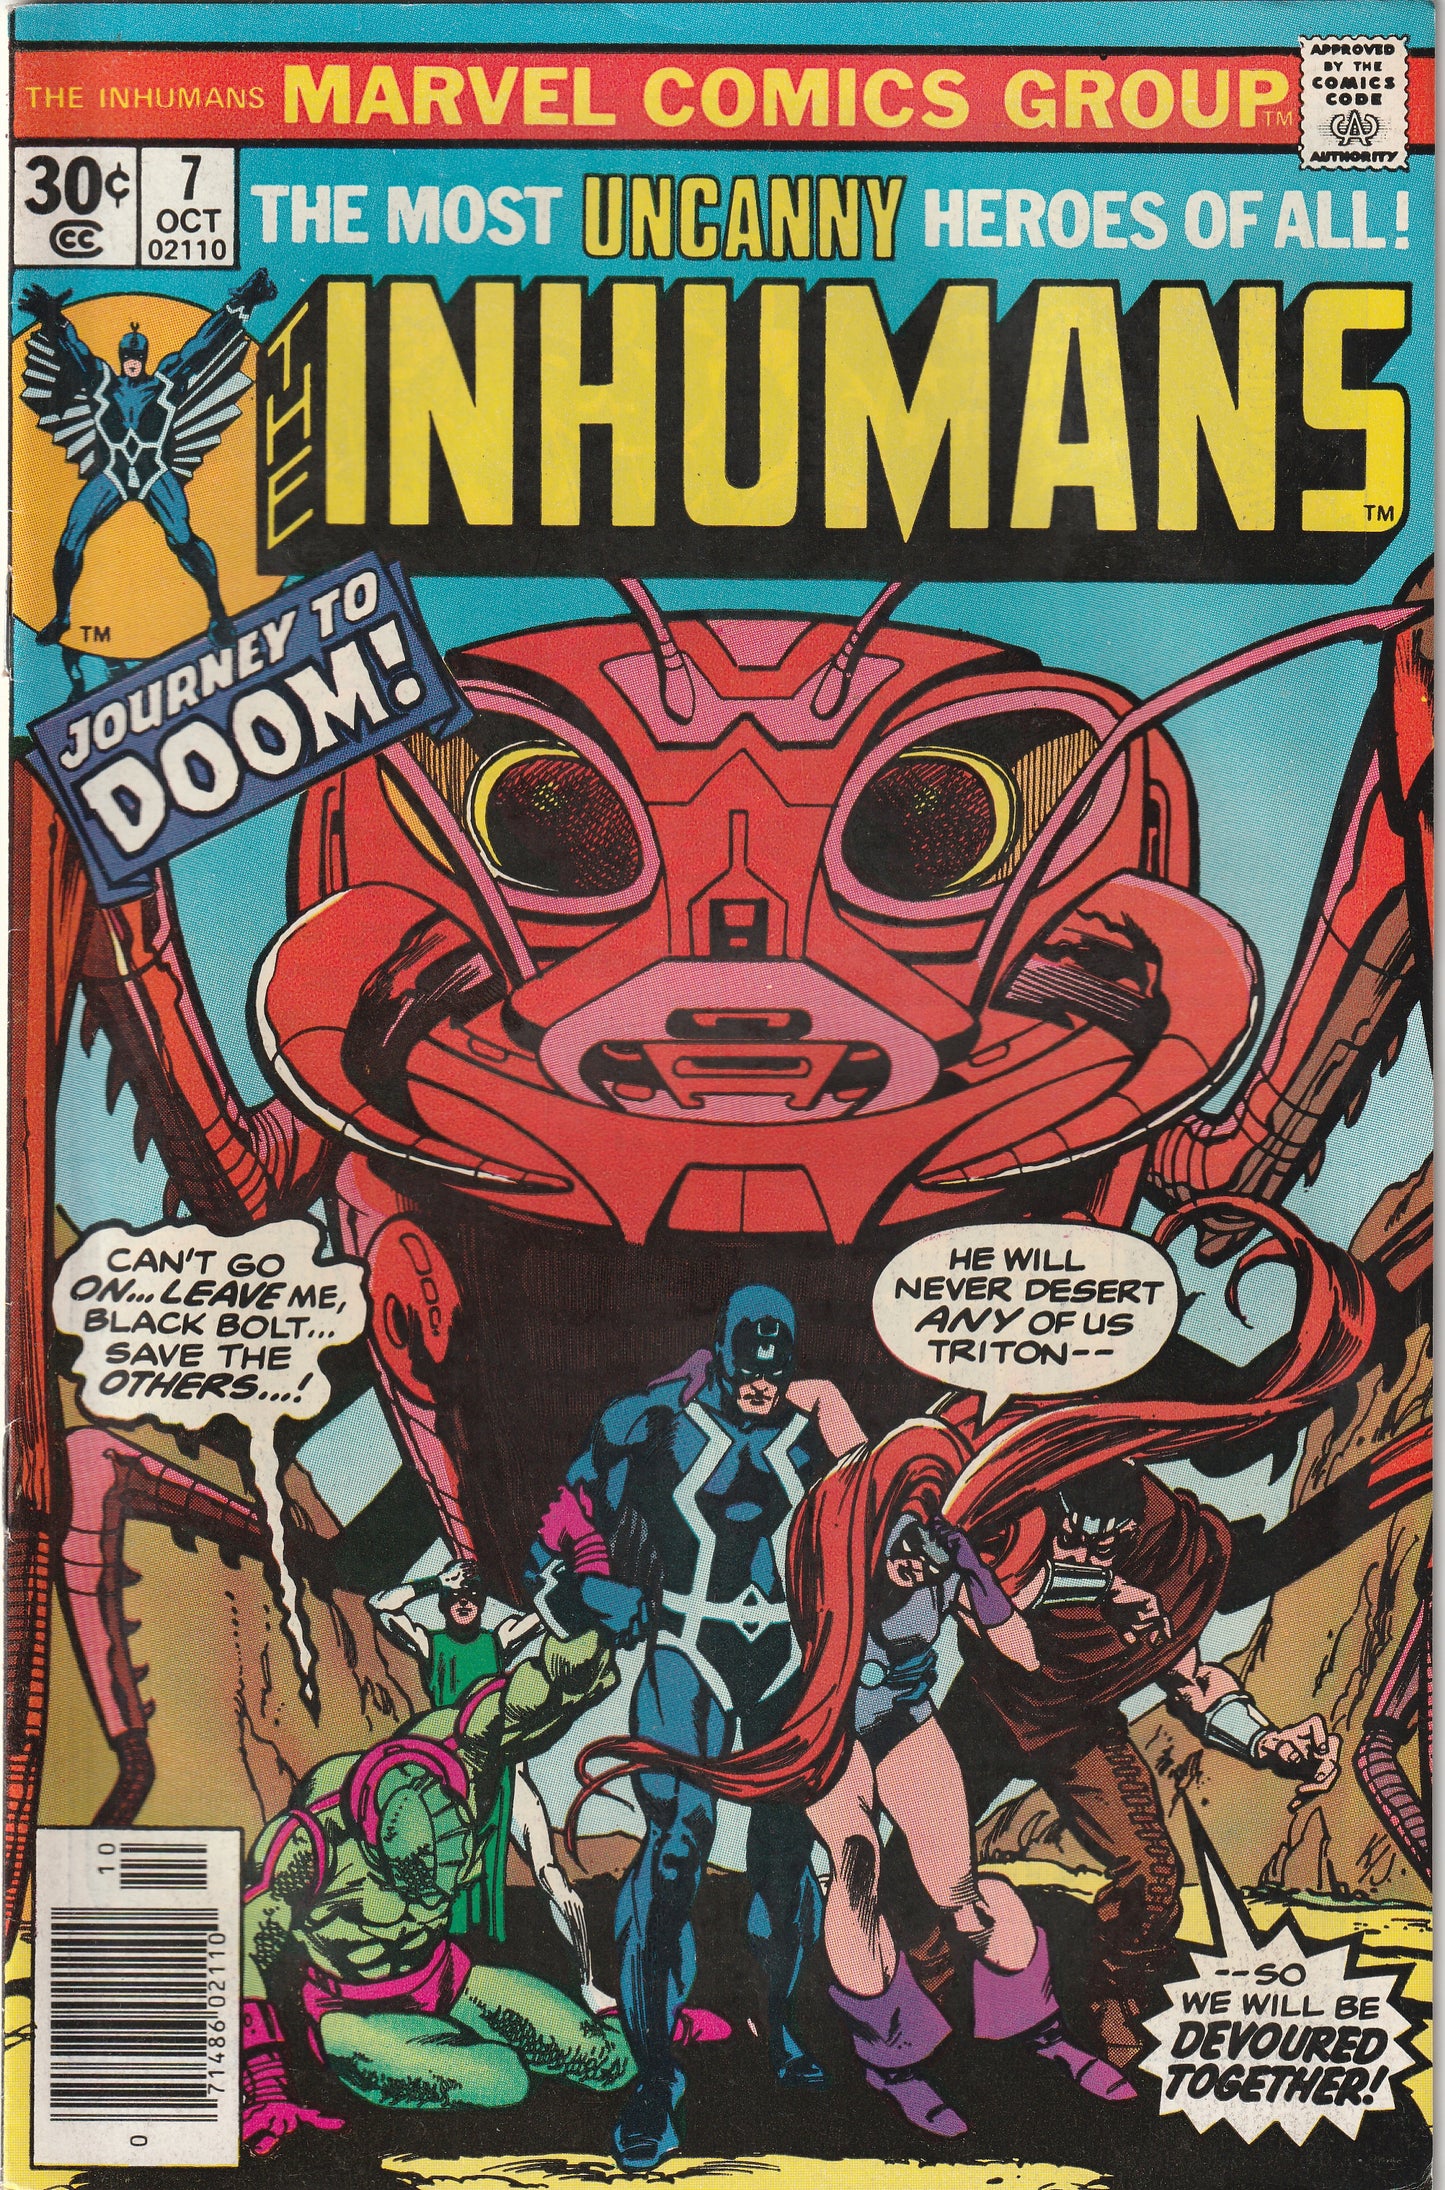 The Inhumans #7 (1976)